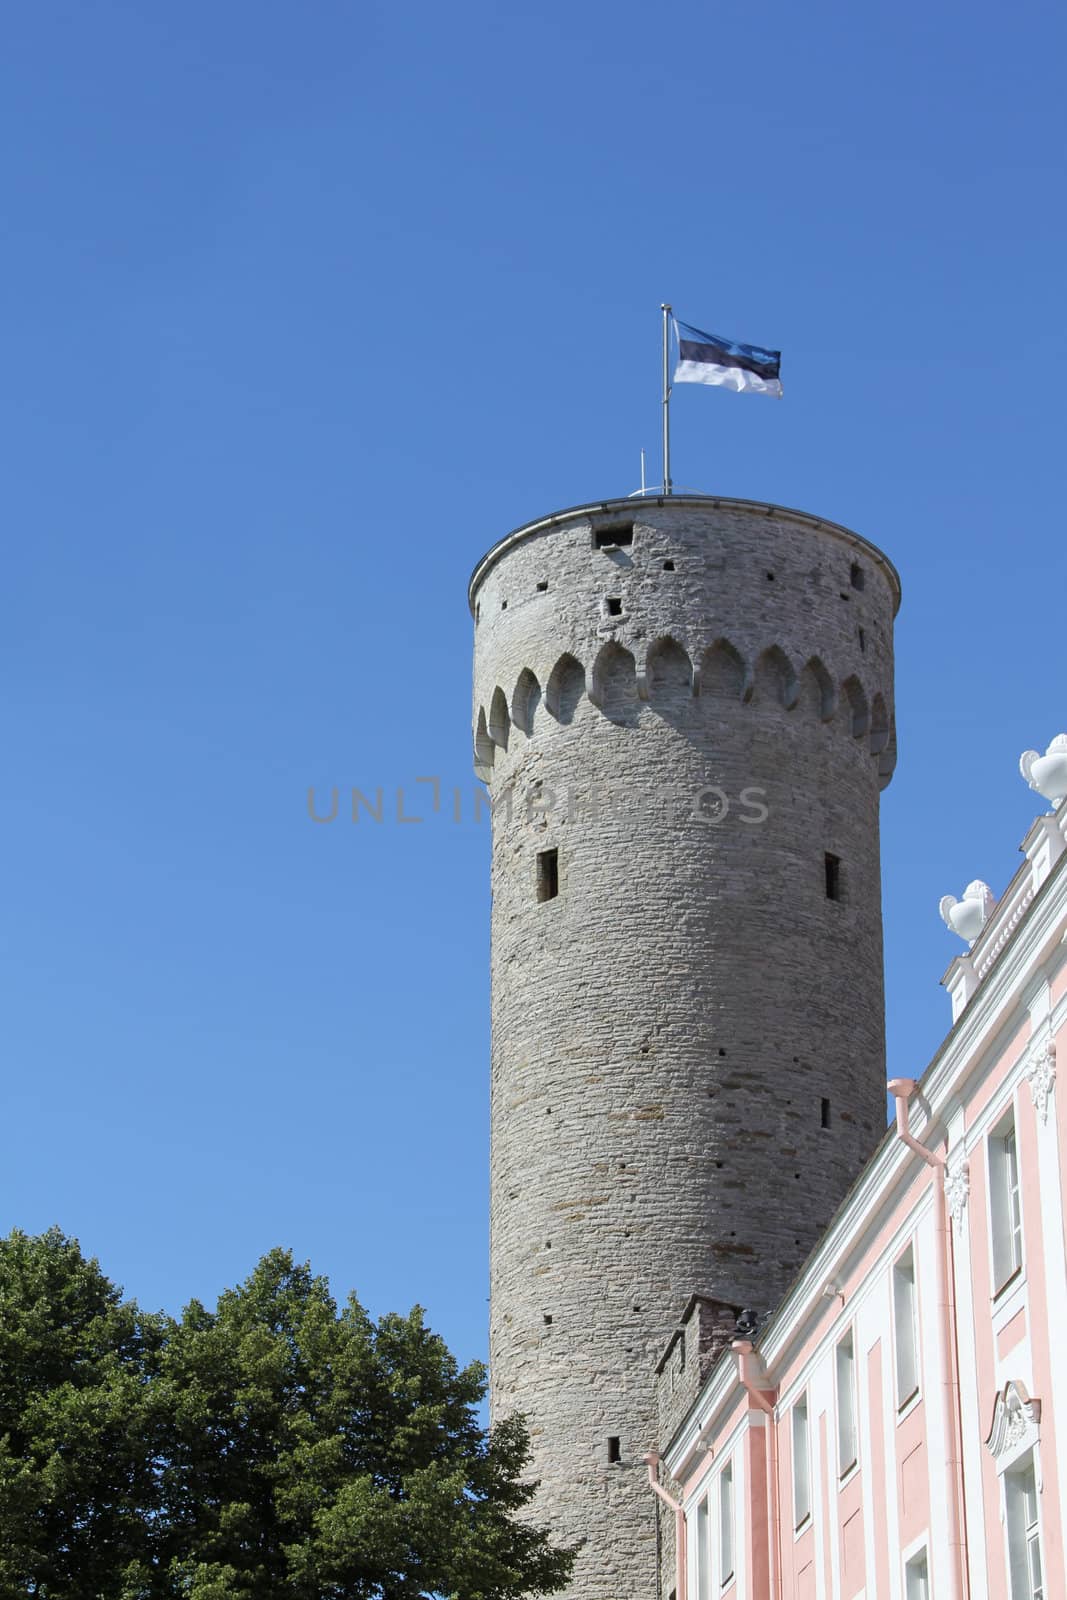 Pikk Hermann tower of old Tallinn in sunny summer day